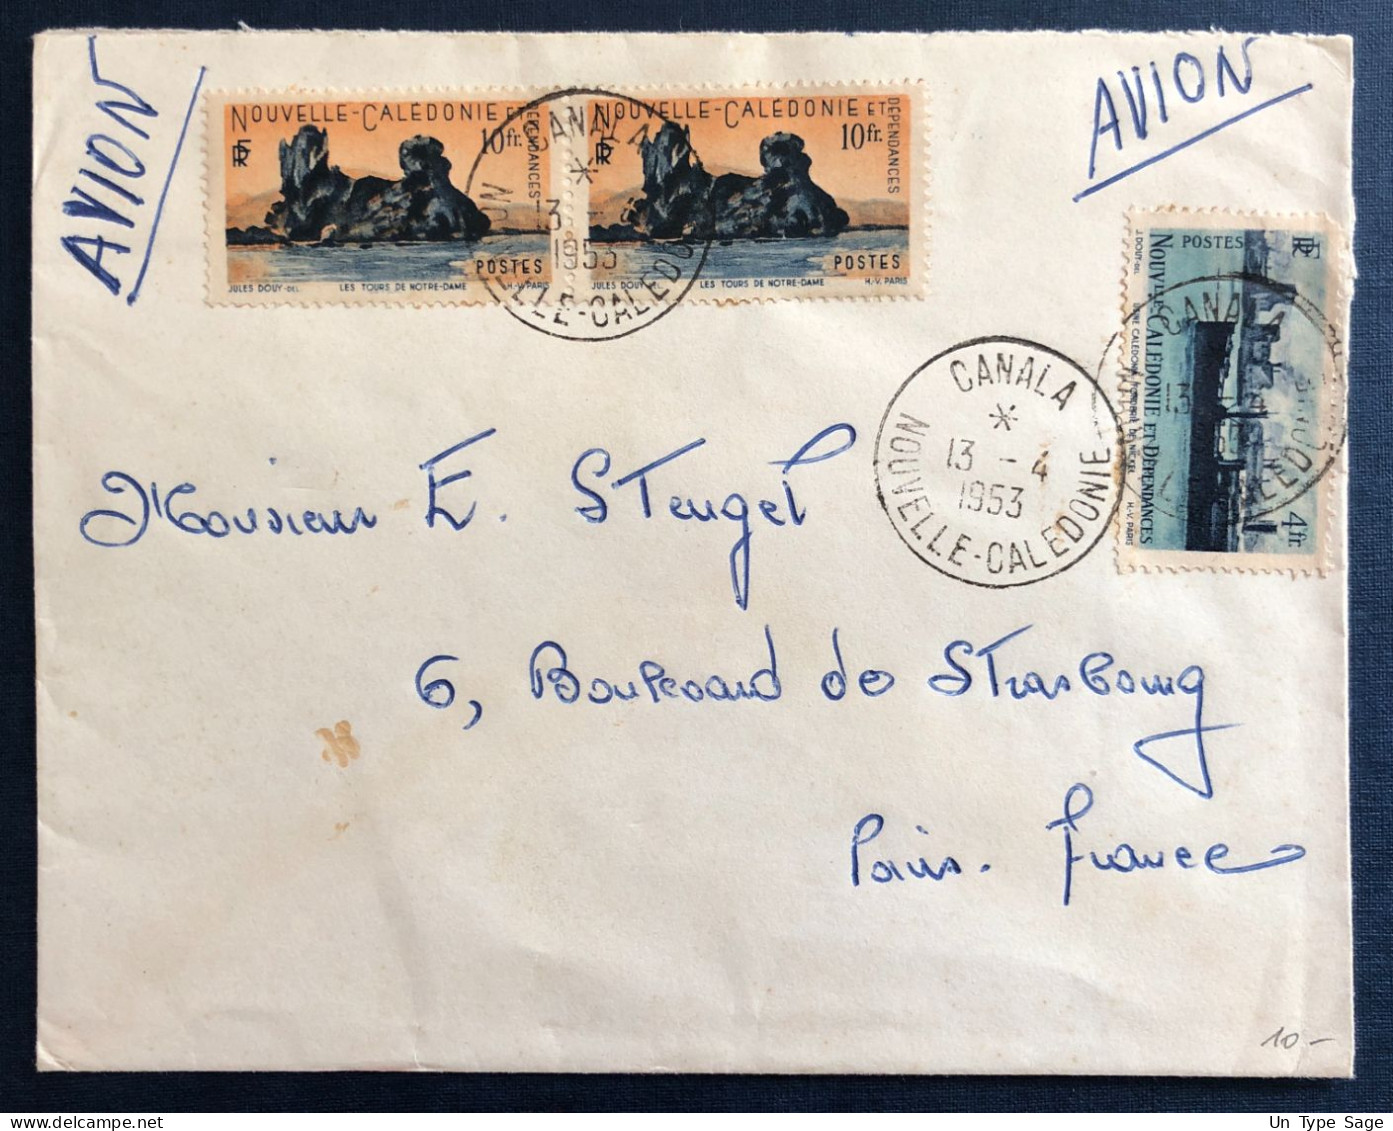 Nouvelle-Calédonie, Divers Sur Enveloppe TAD CANALA 13.4.1953 - (B3261) - Lettres & Documents